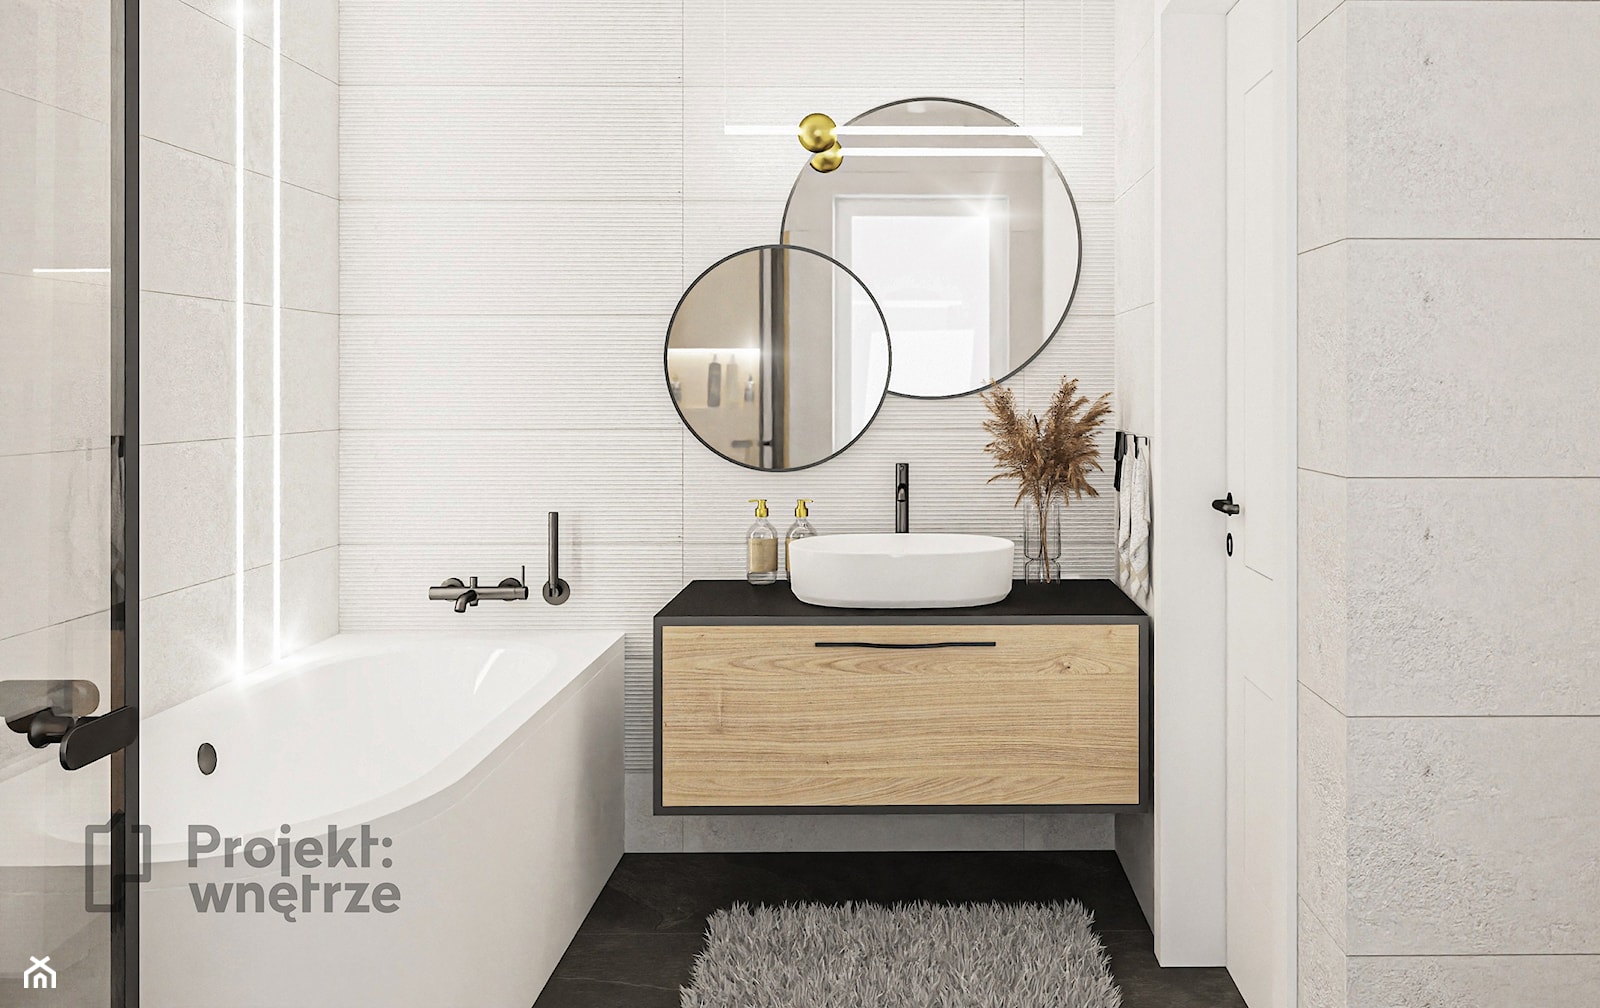 Przytulna łazienka w bieli, drewnie i "lamelkach" - PROJEKT: WNĘTRZE www.projektwnetrze.com.pl - zdjęcie od PROJEKT: WNĘTRZE - Homebook